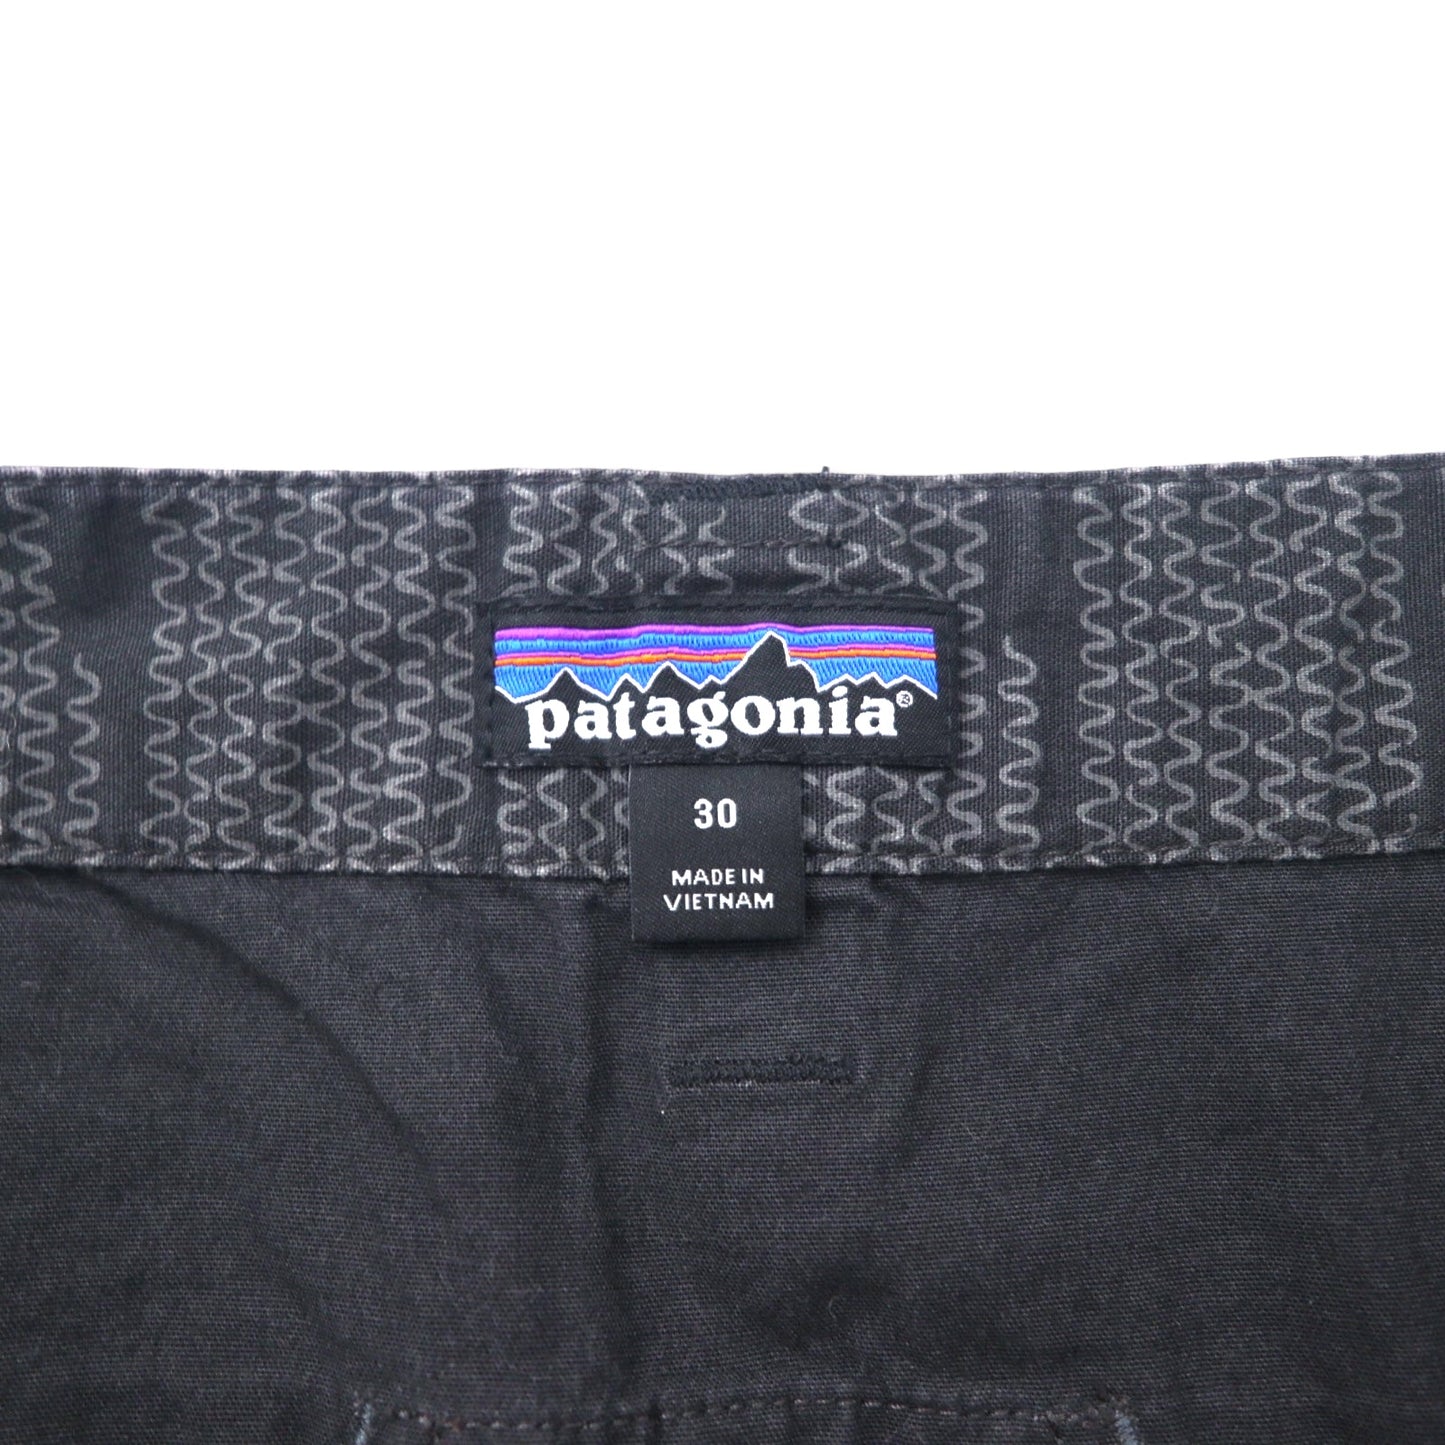 PATAGONIA Hengrock PANTS Climbing Pants 30 Gray Cotton Patterned 